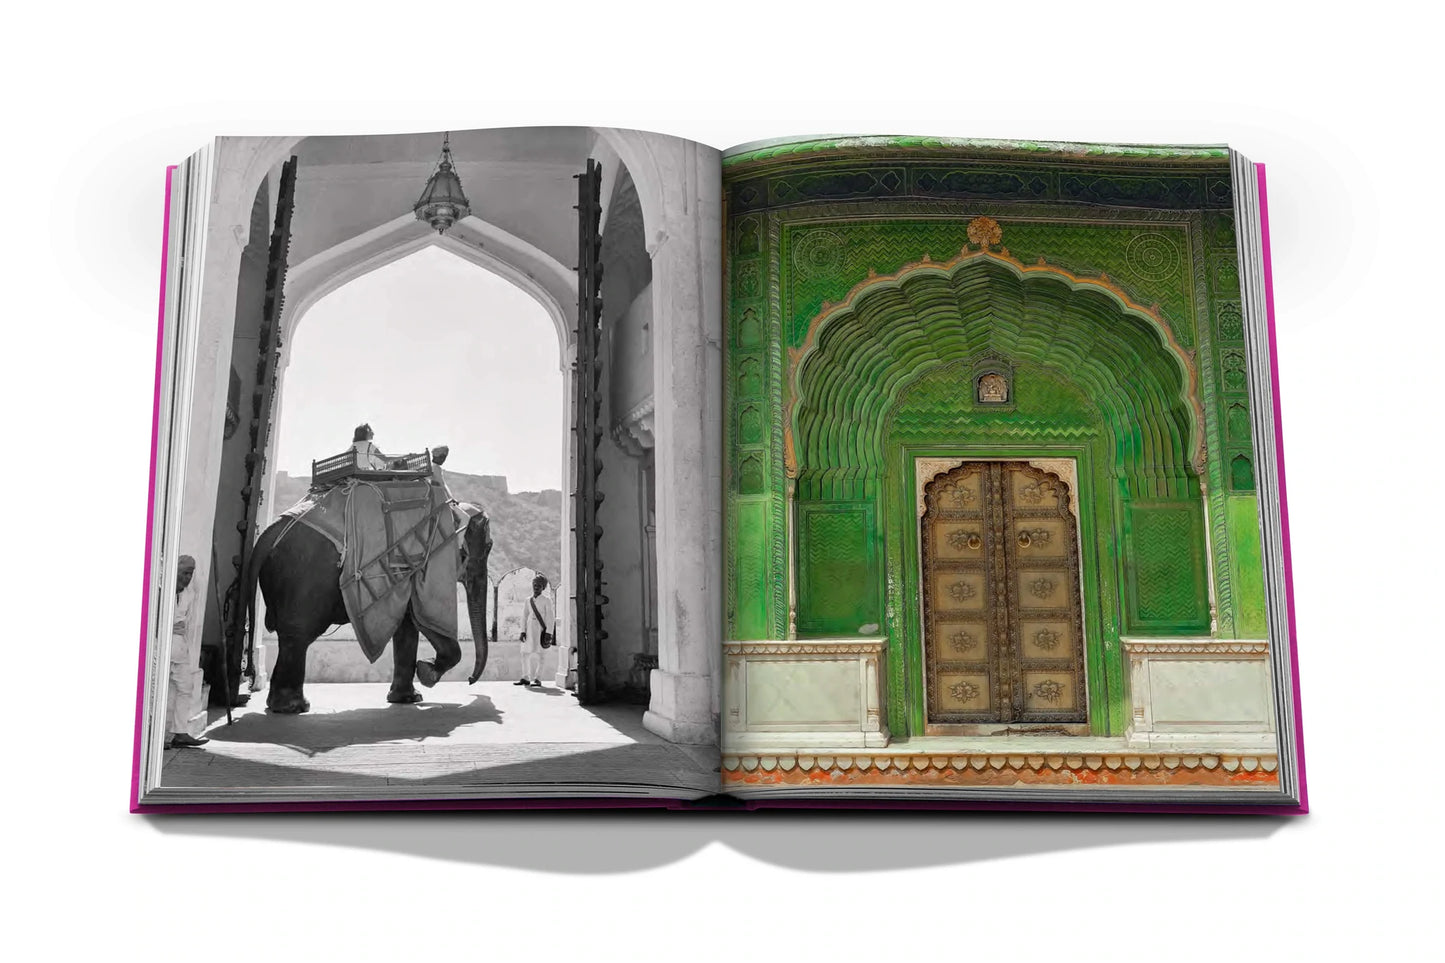 Jaipur Book